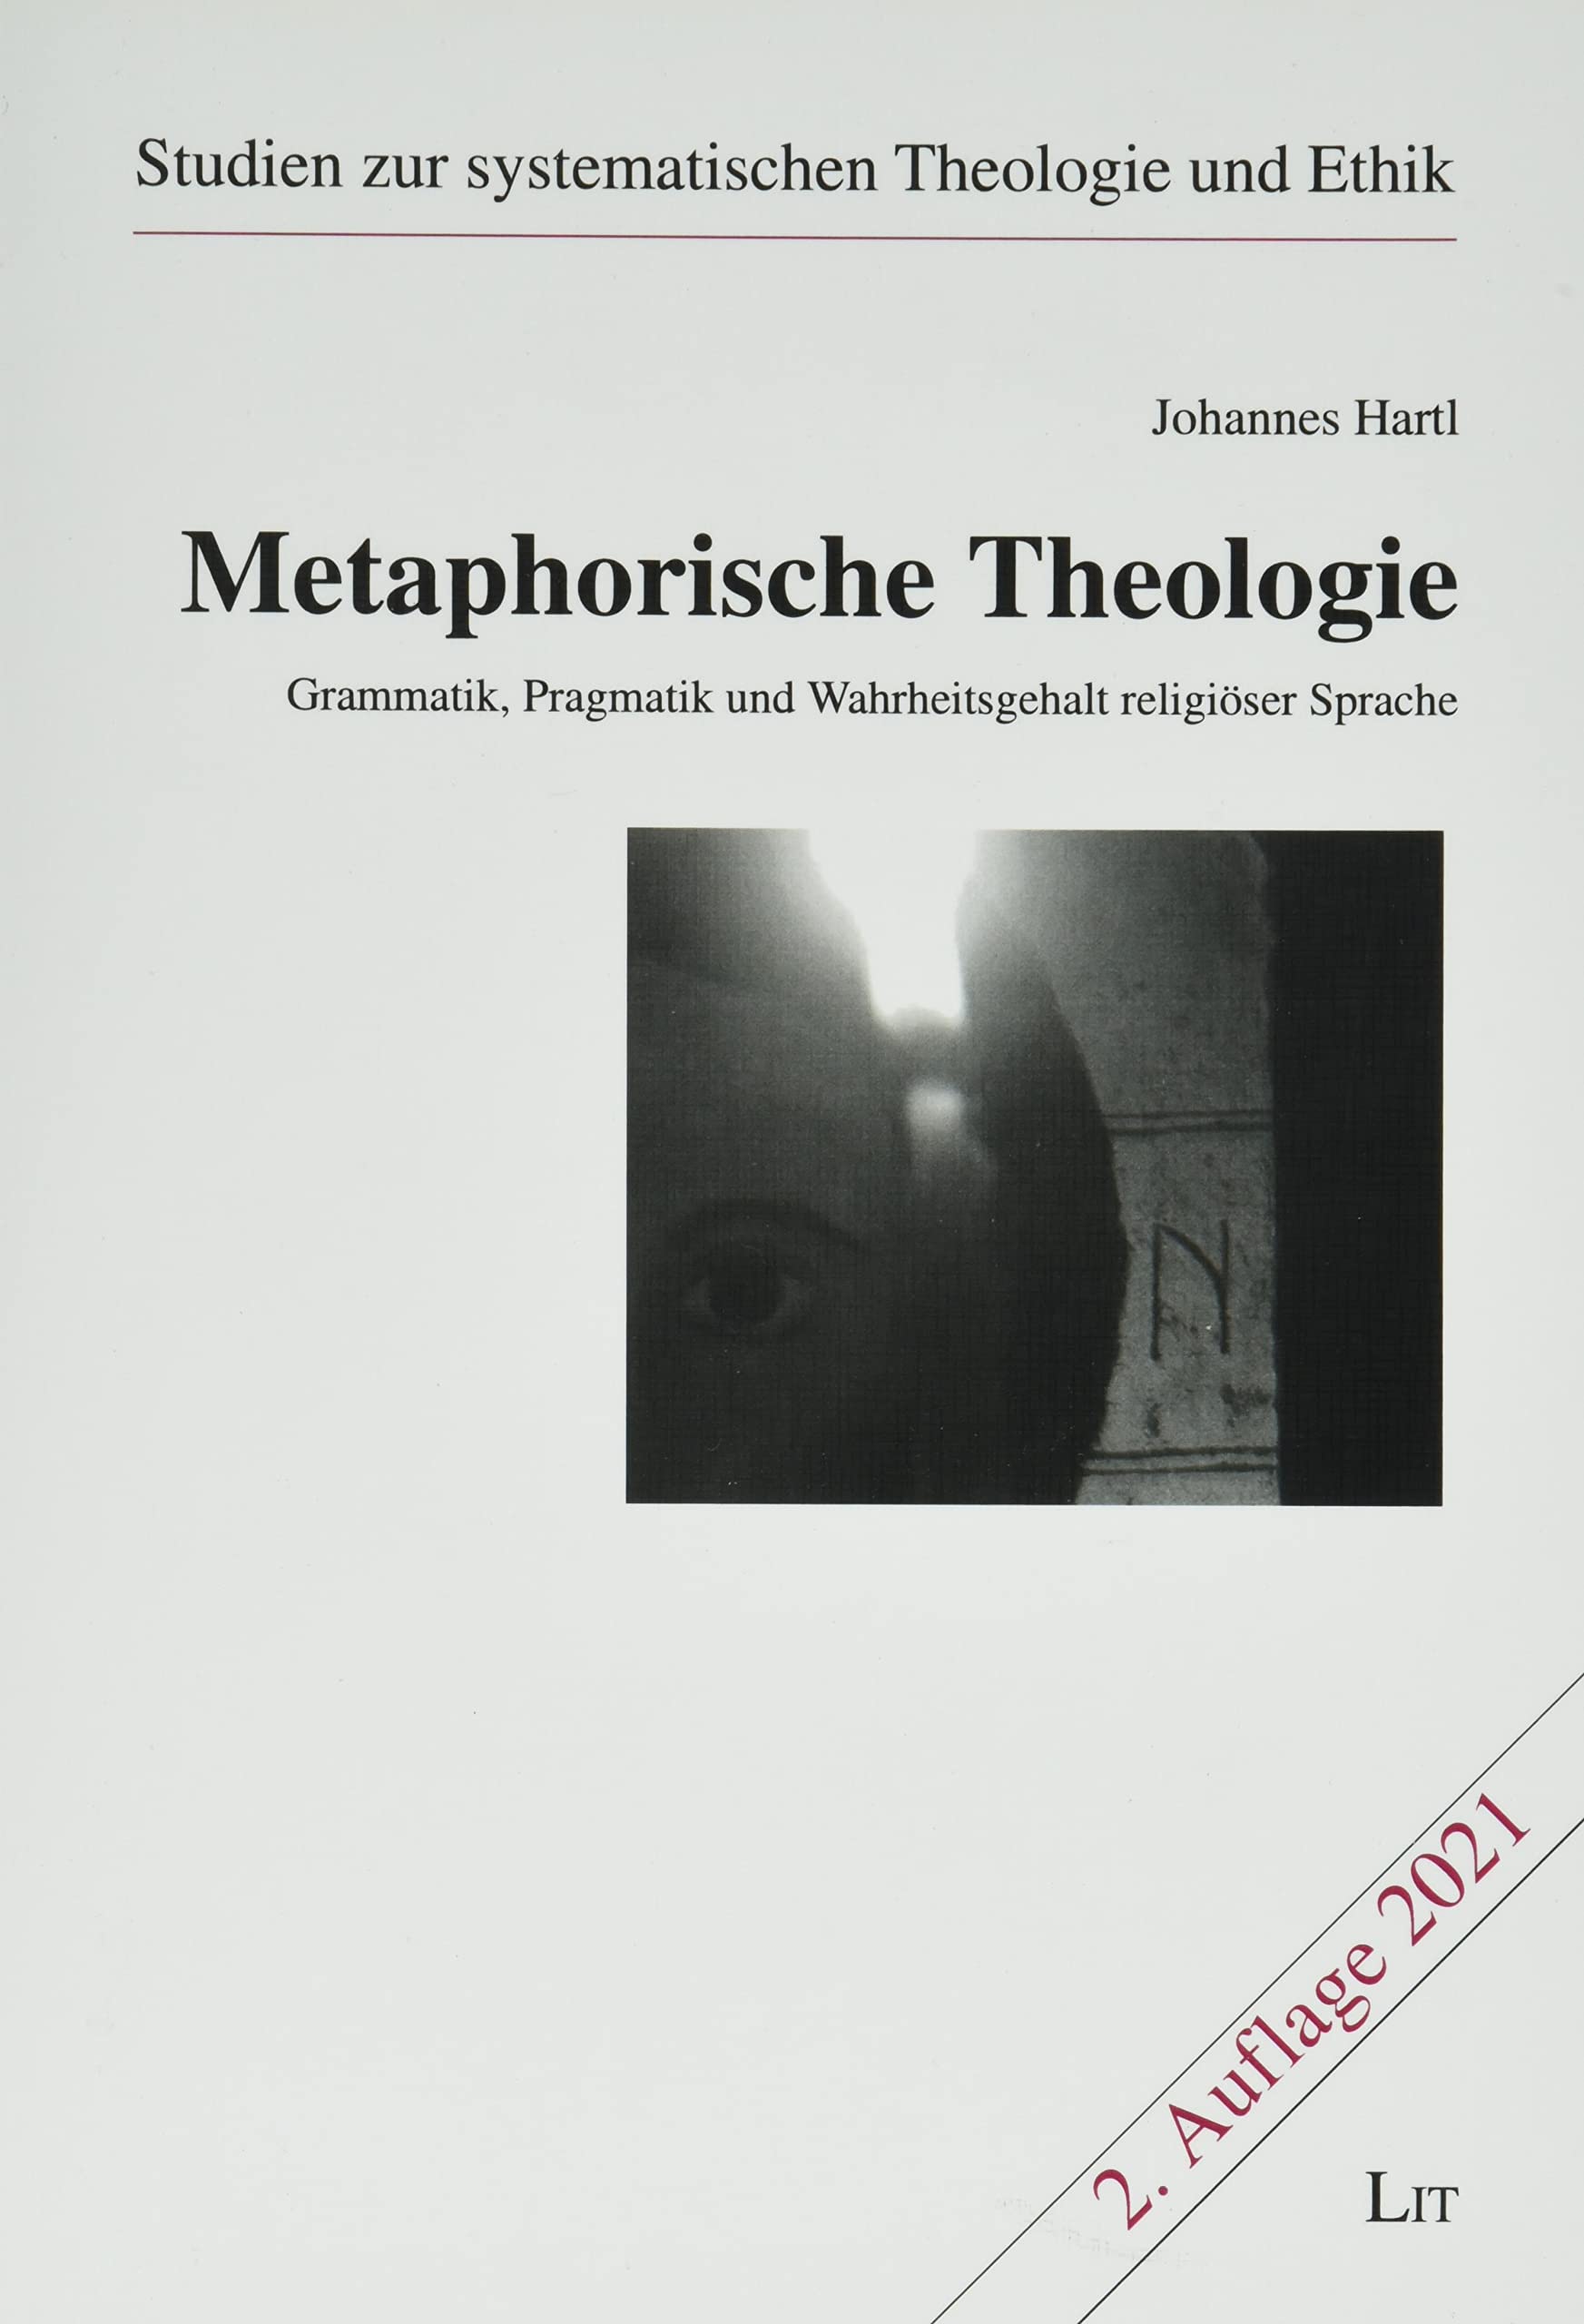 Metaphorische Theologie - Gebetshaus Augsburg | Shop